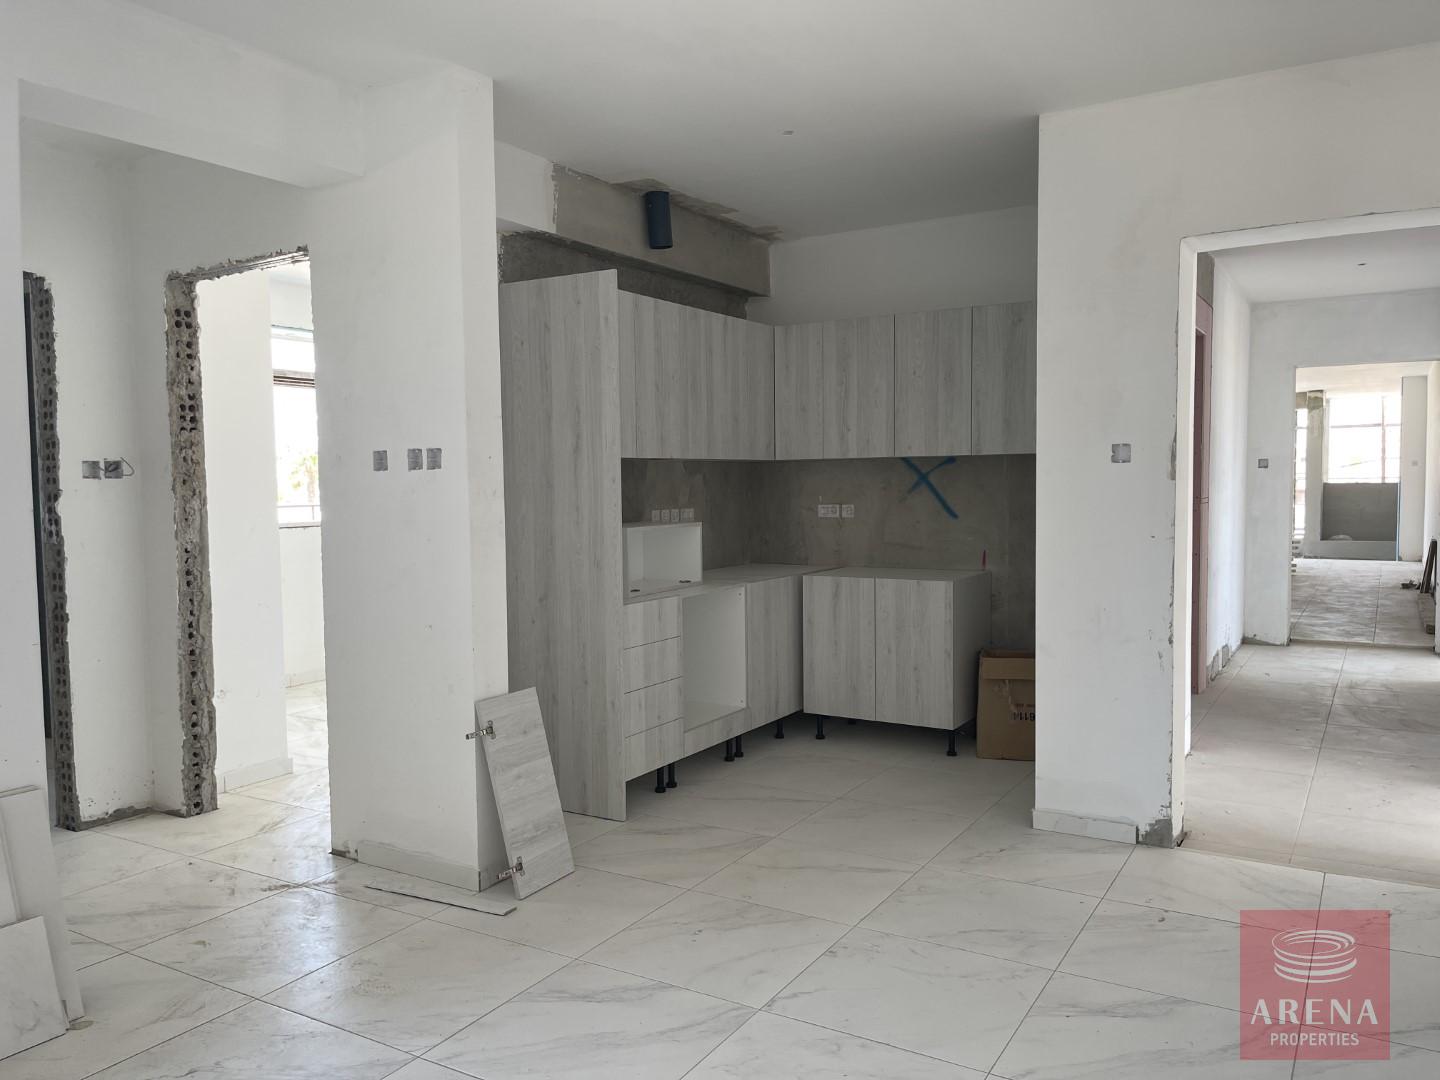 New 1 bed apt in Larnaca - kitchen